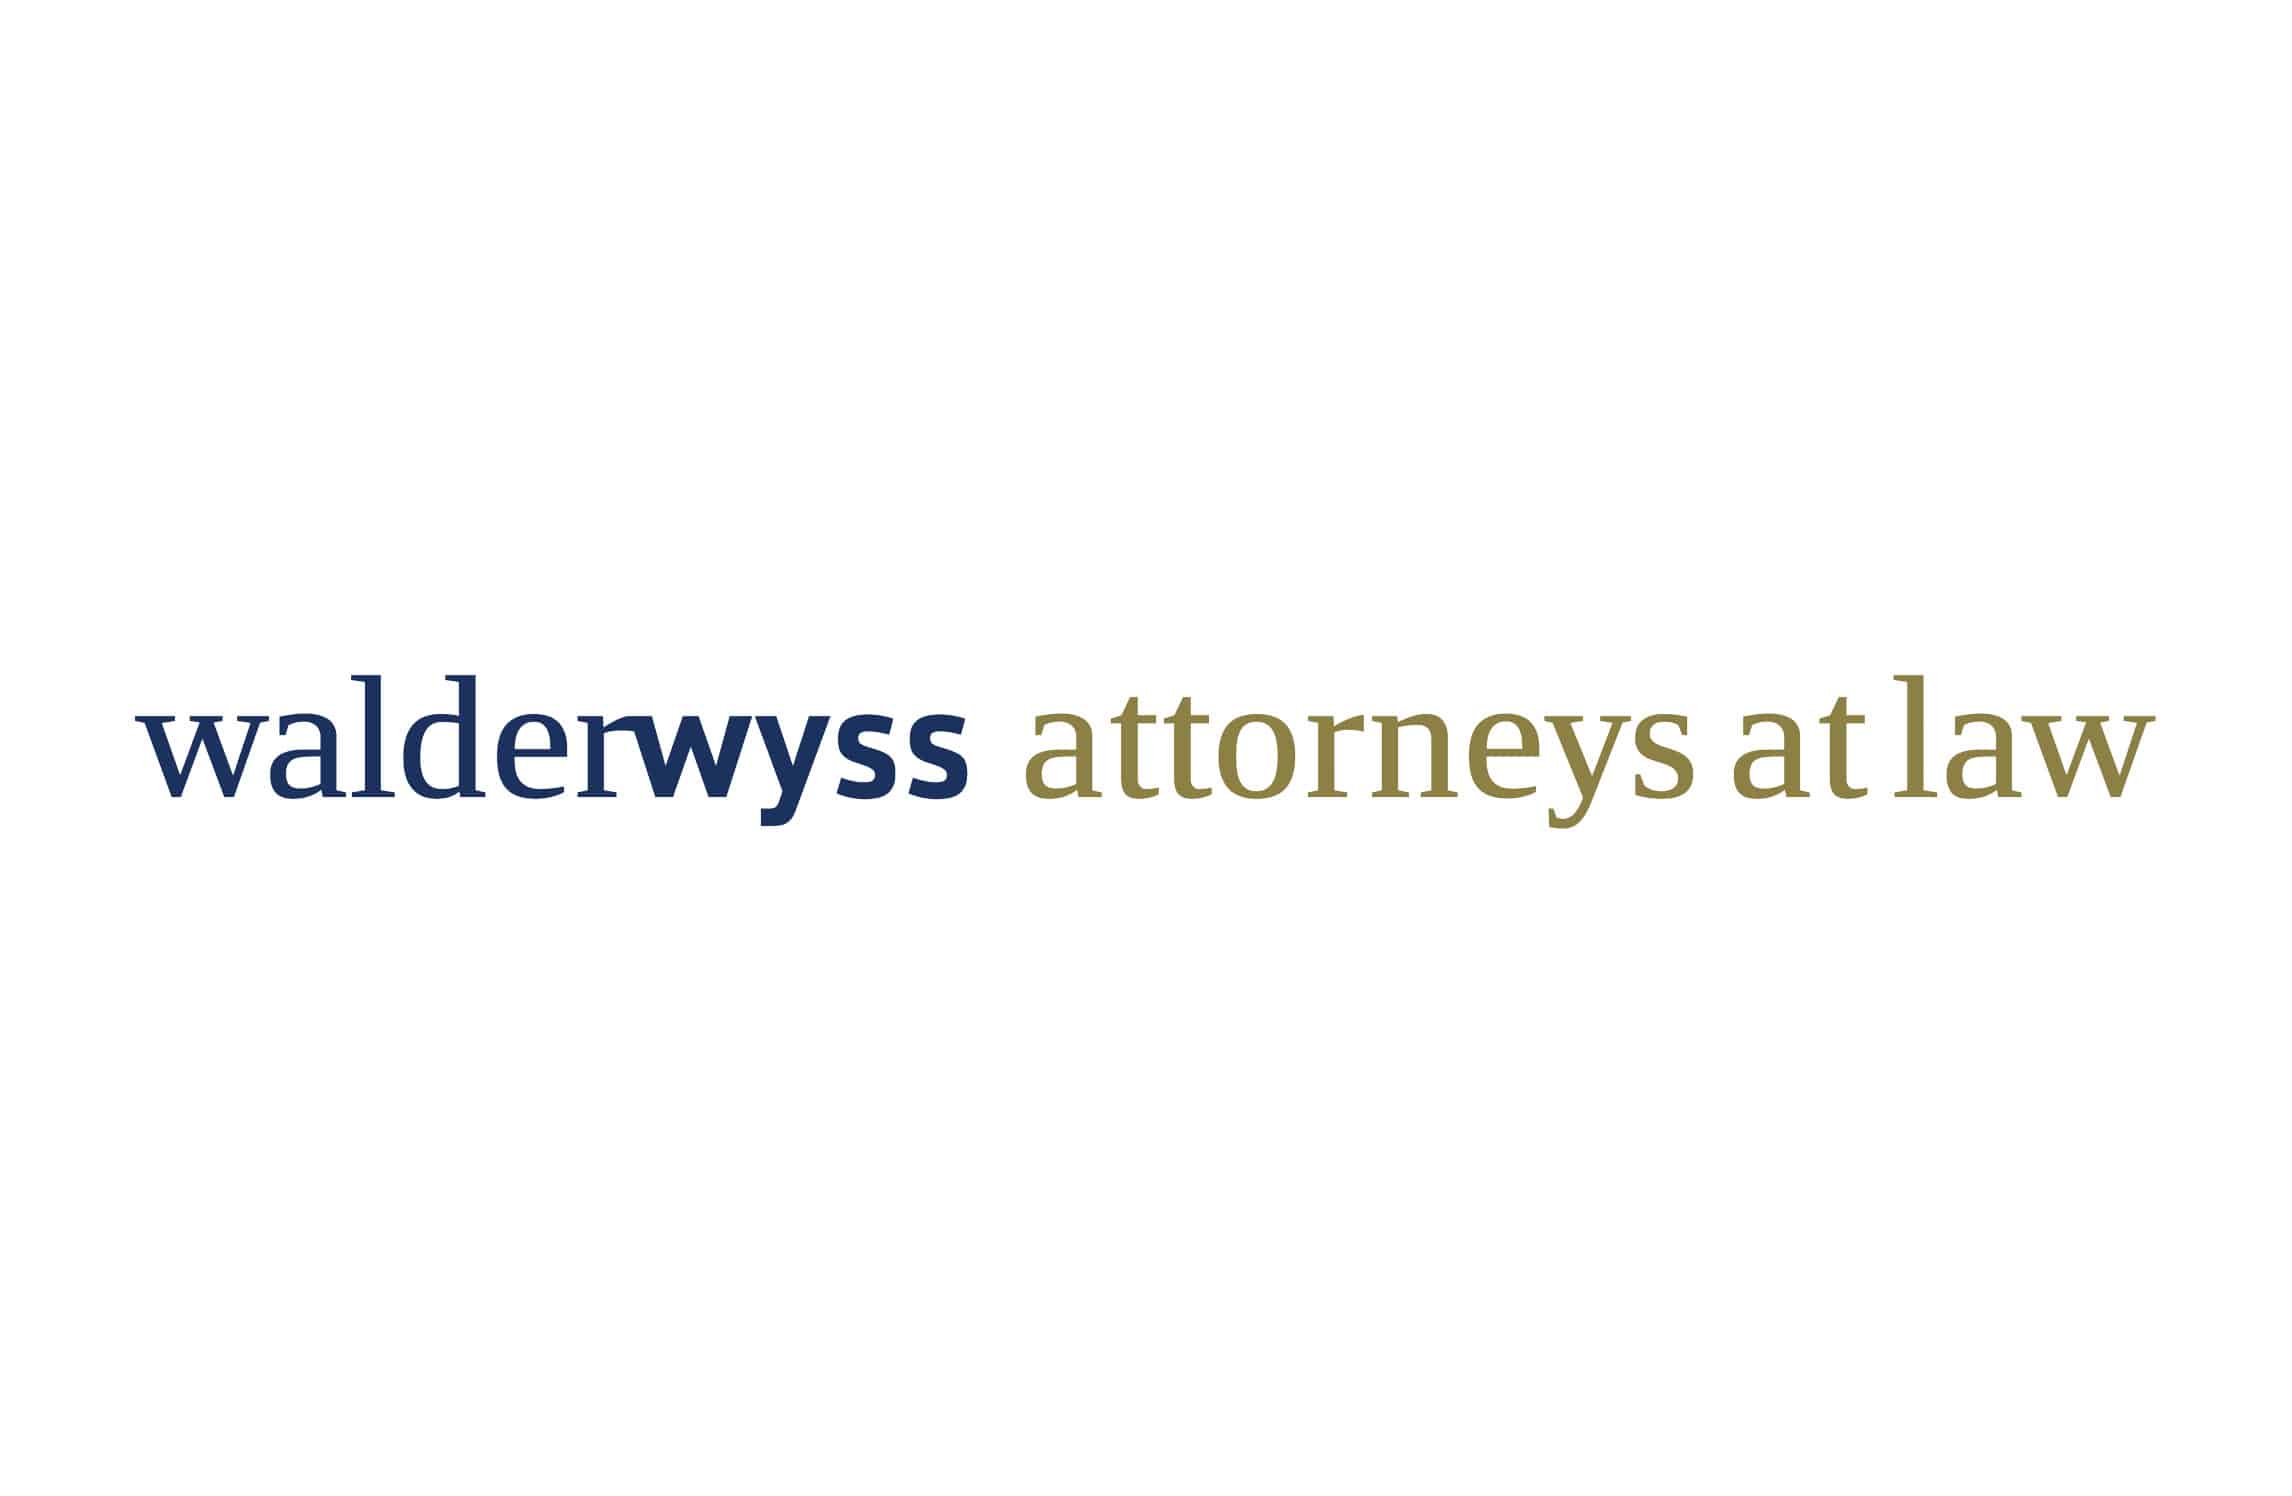 Walder Wyss atterney at law logo